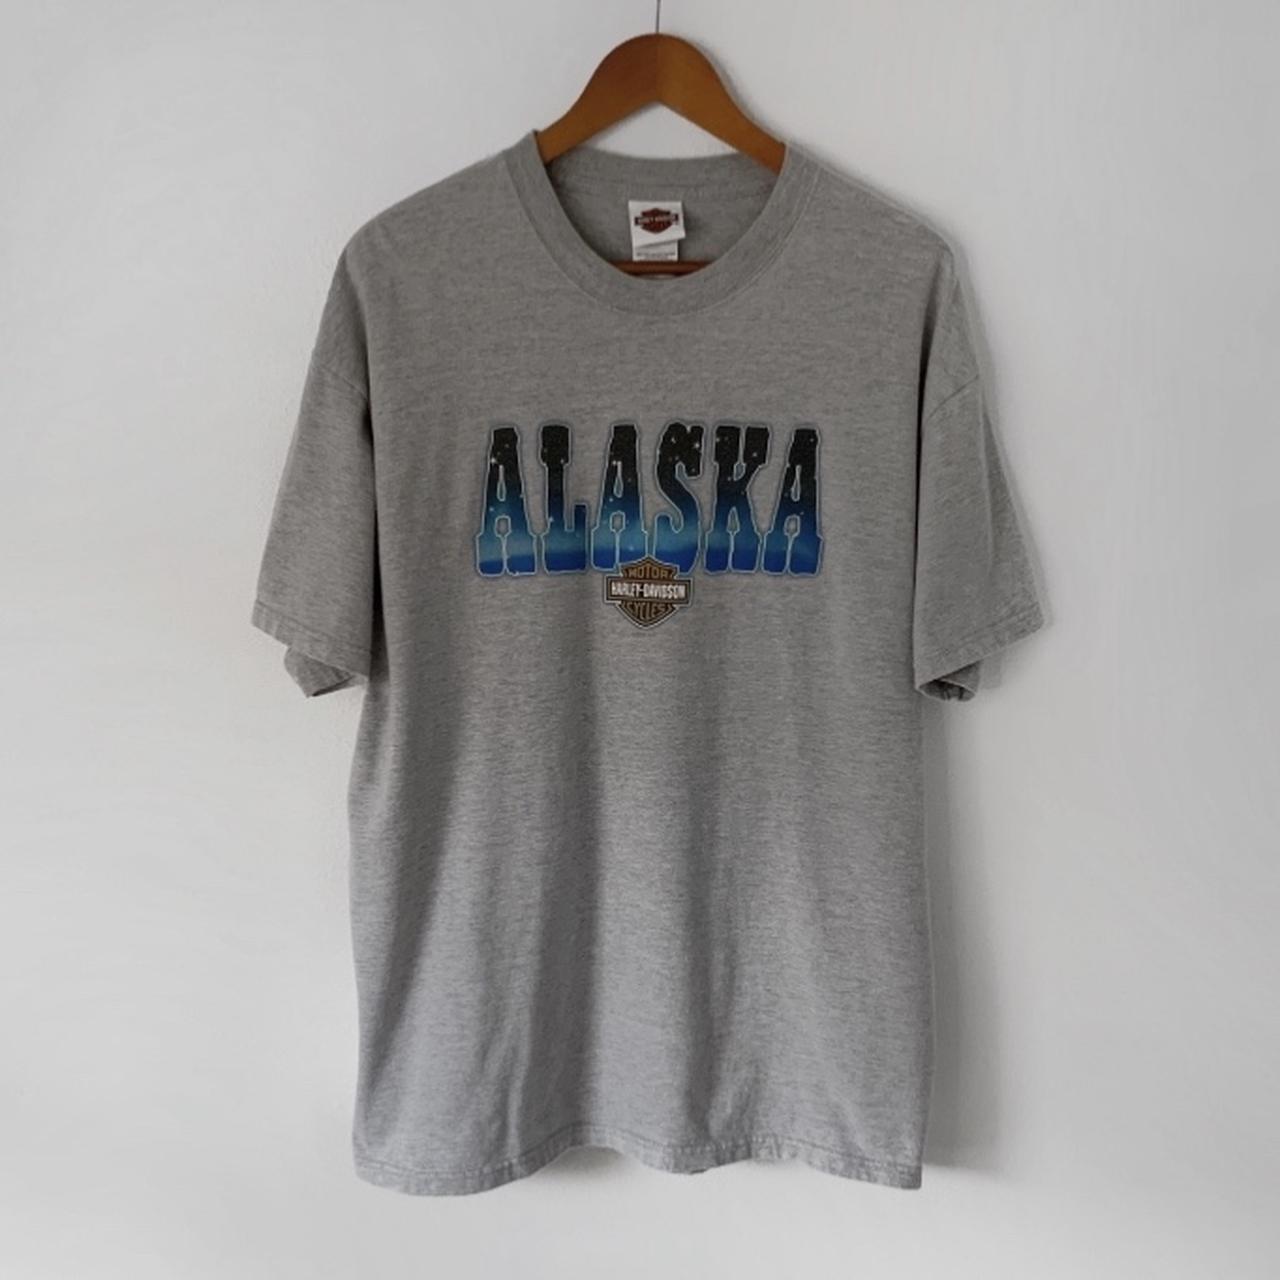 Harley Davidson Chilkoot Pass Alaska t-shirt. Great... - Depop